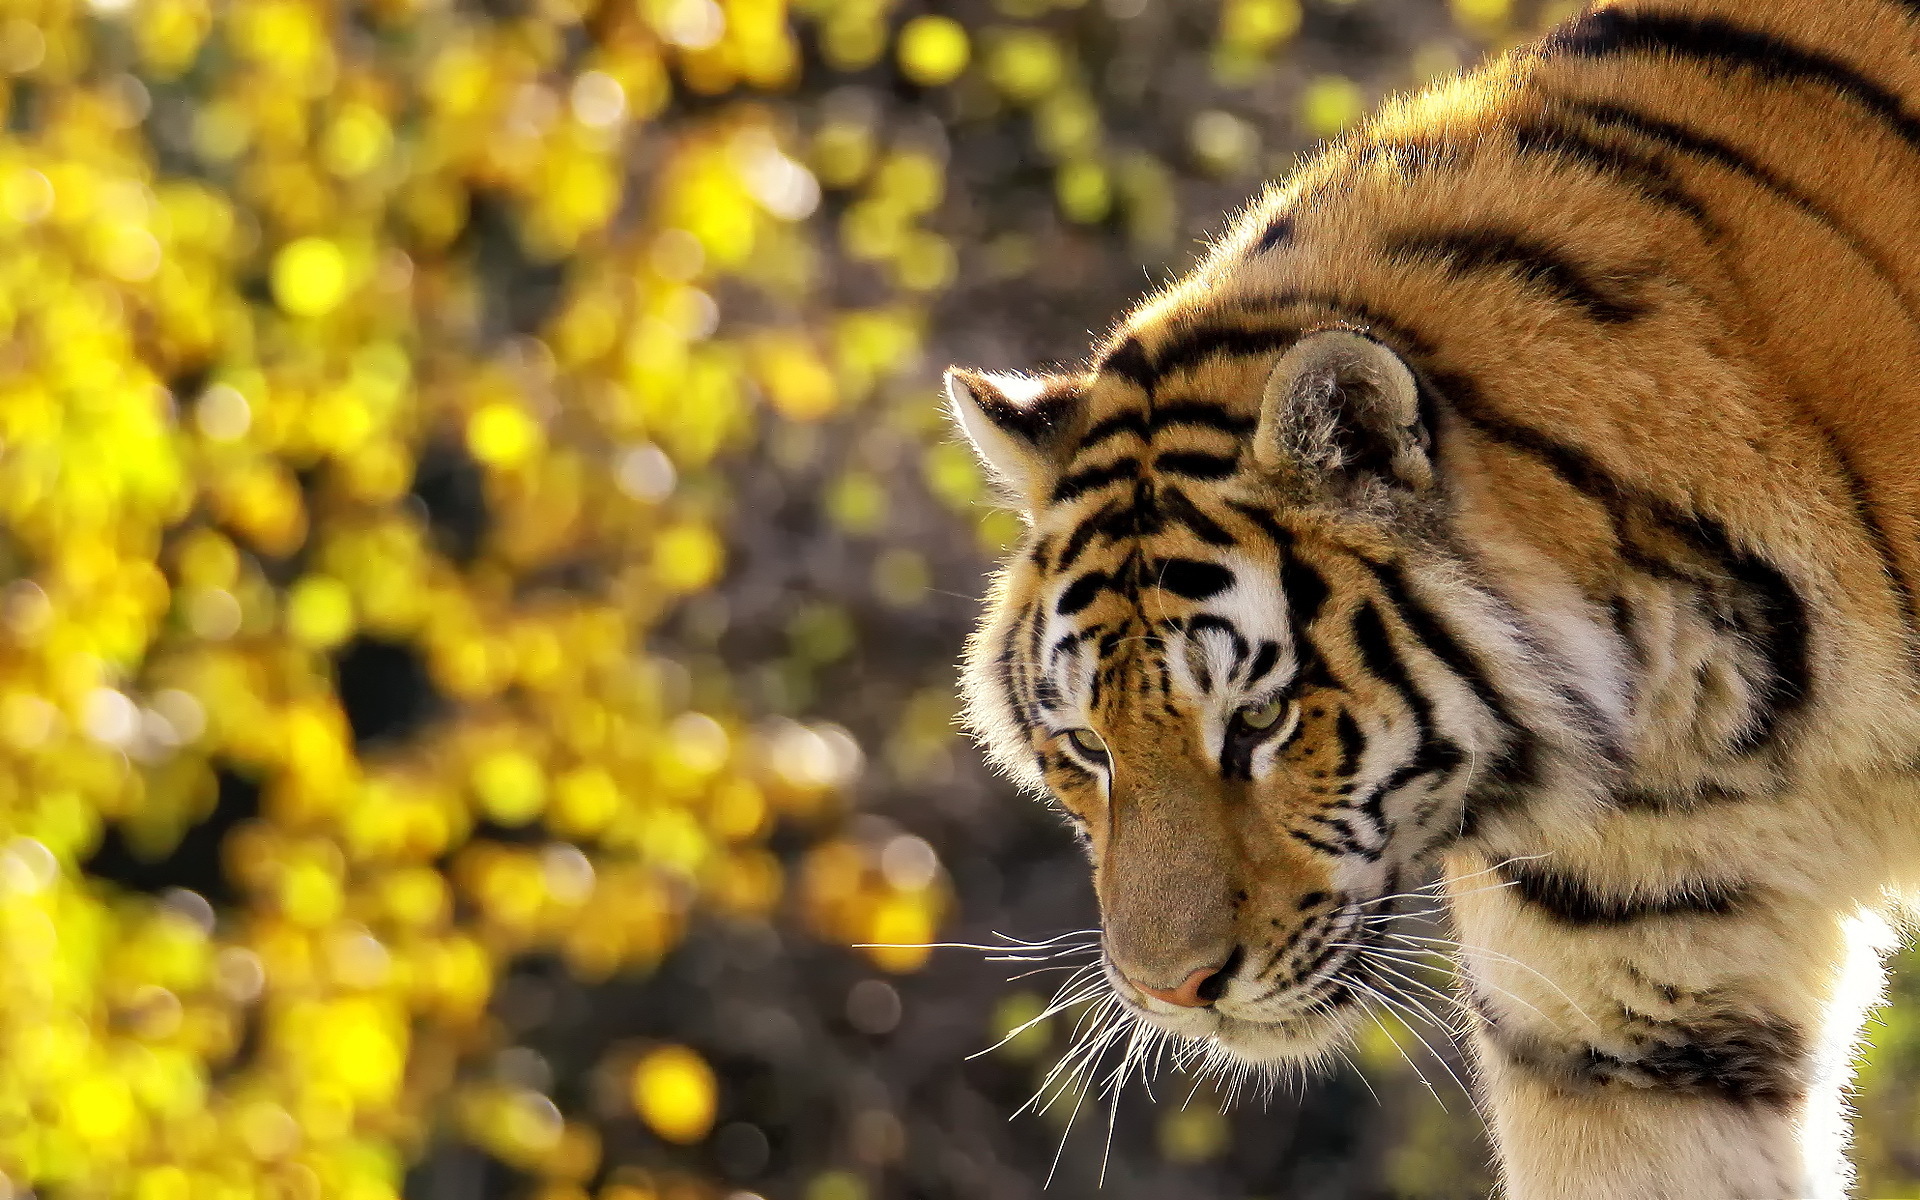 Lovely tiger